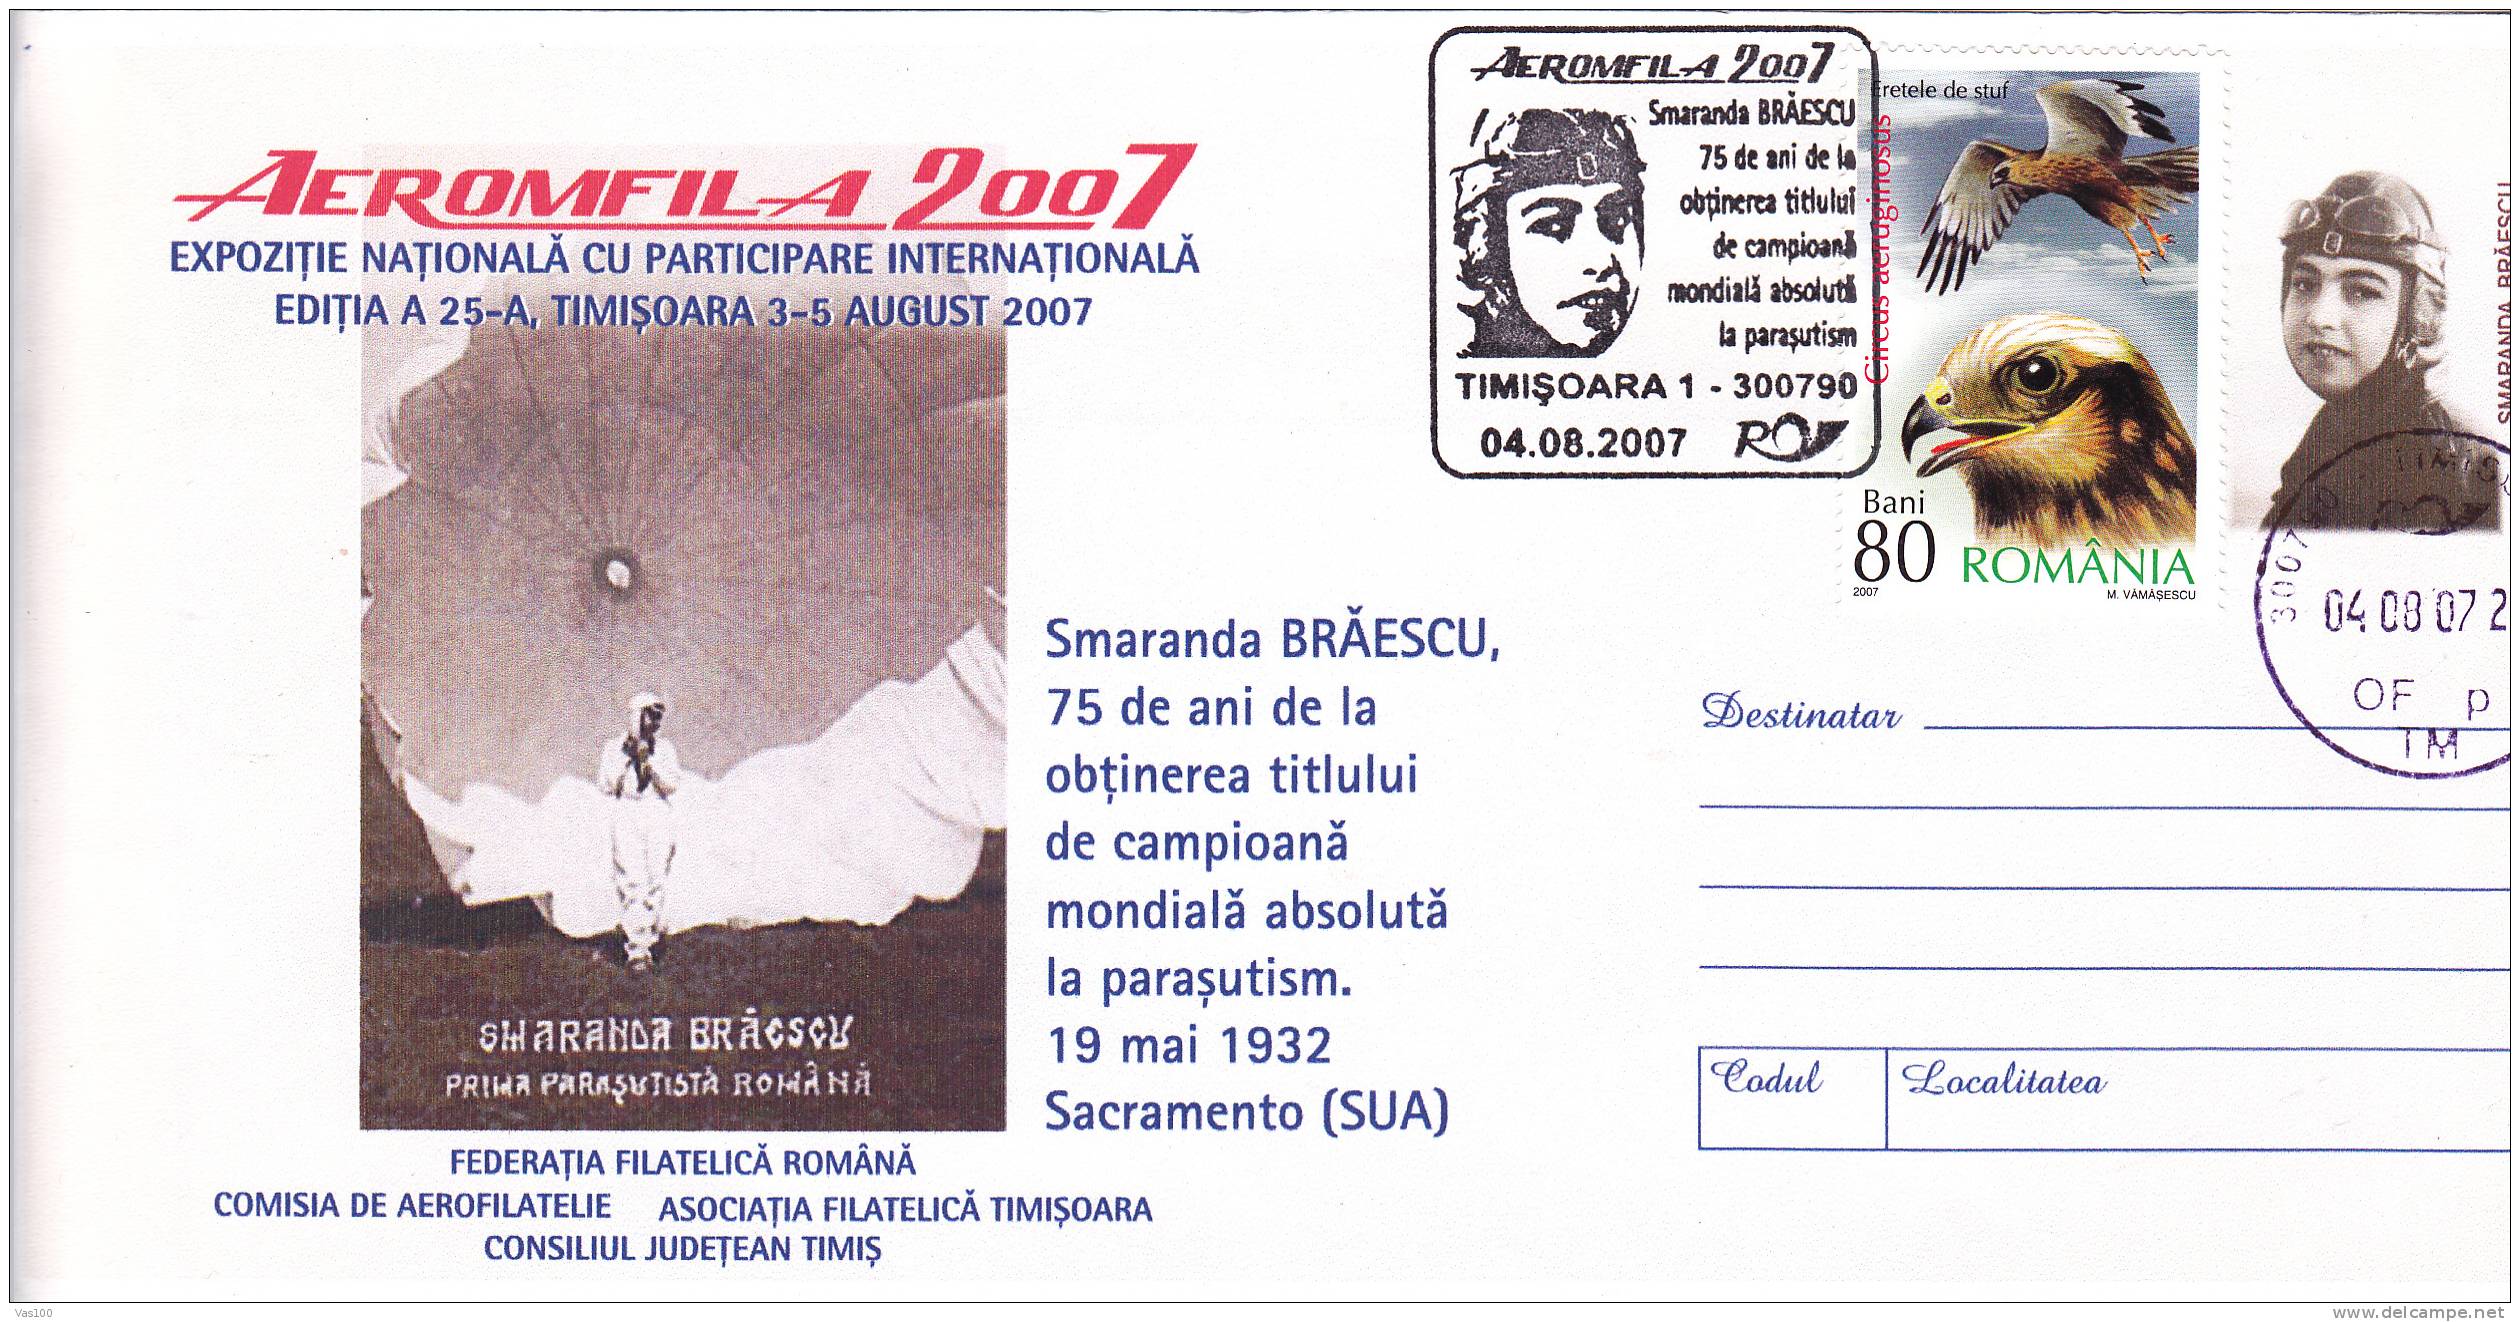 Parachutisme Parachutting,1932,Sacrame Nto USA,Smaranda Braescu The Skydiving World Champion!special Cover 2007 Romania. - Paracadutismo